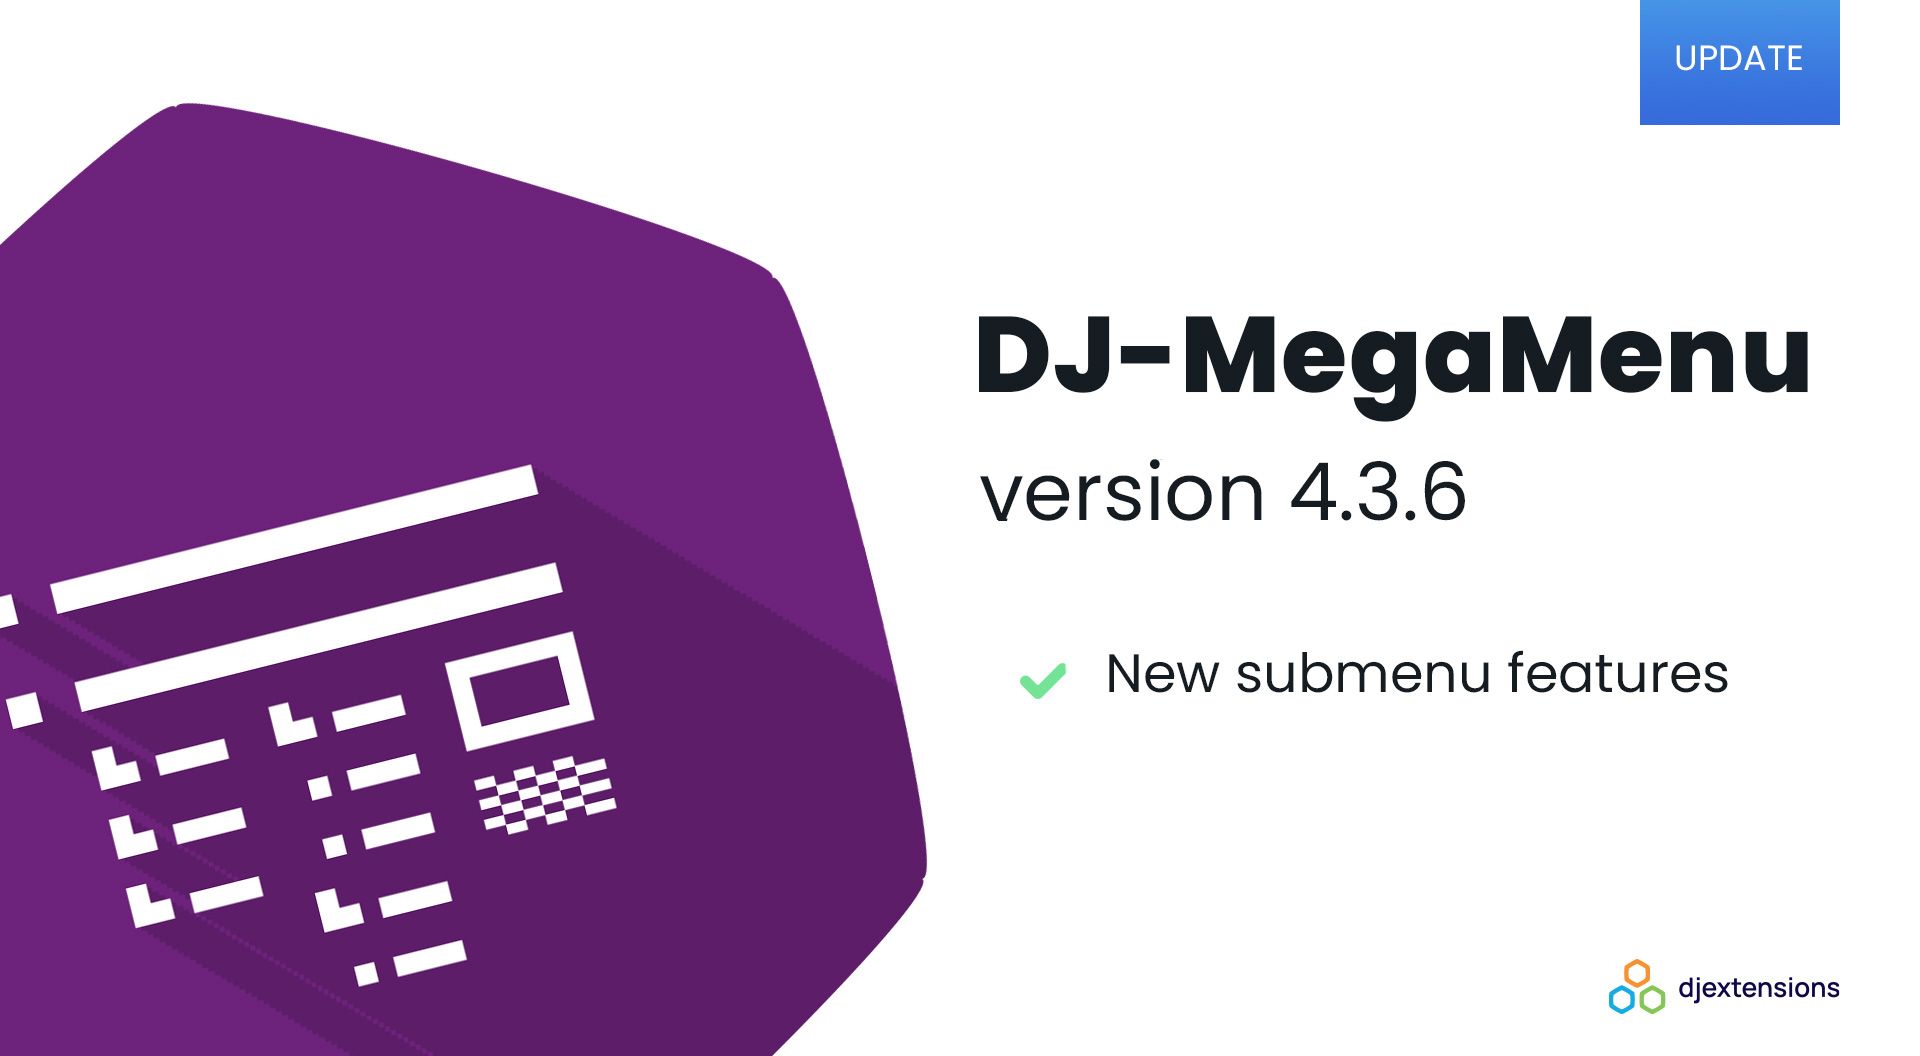 DJ-MegaMenu 4.3.6 release brings new submenu features